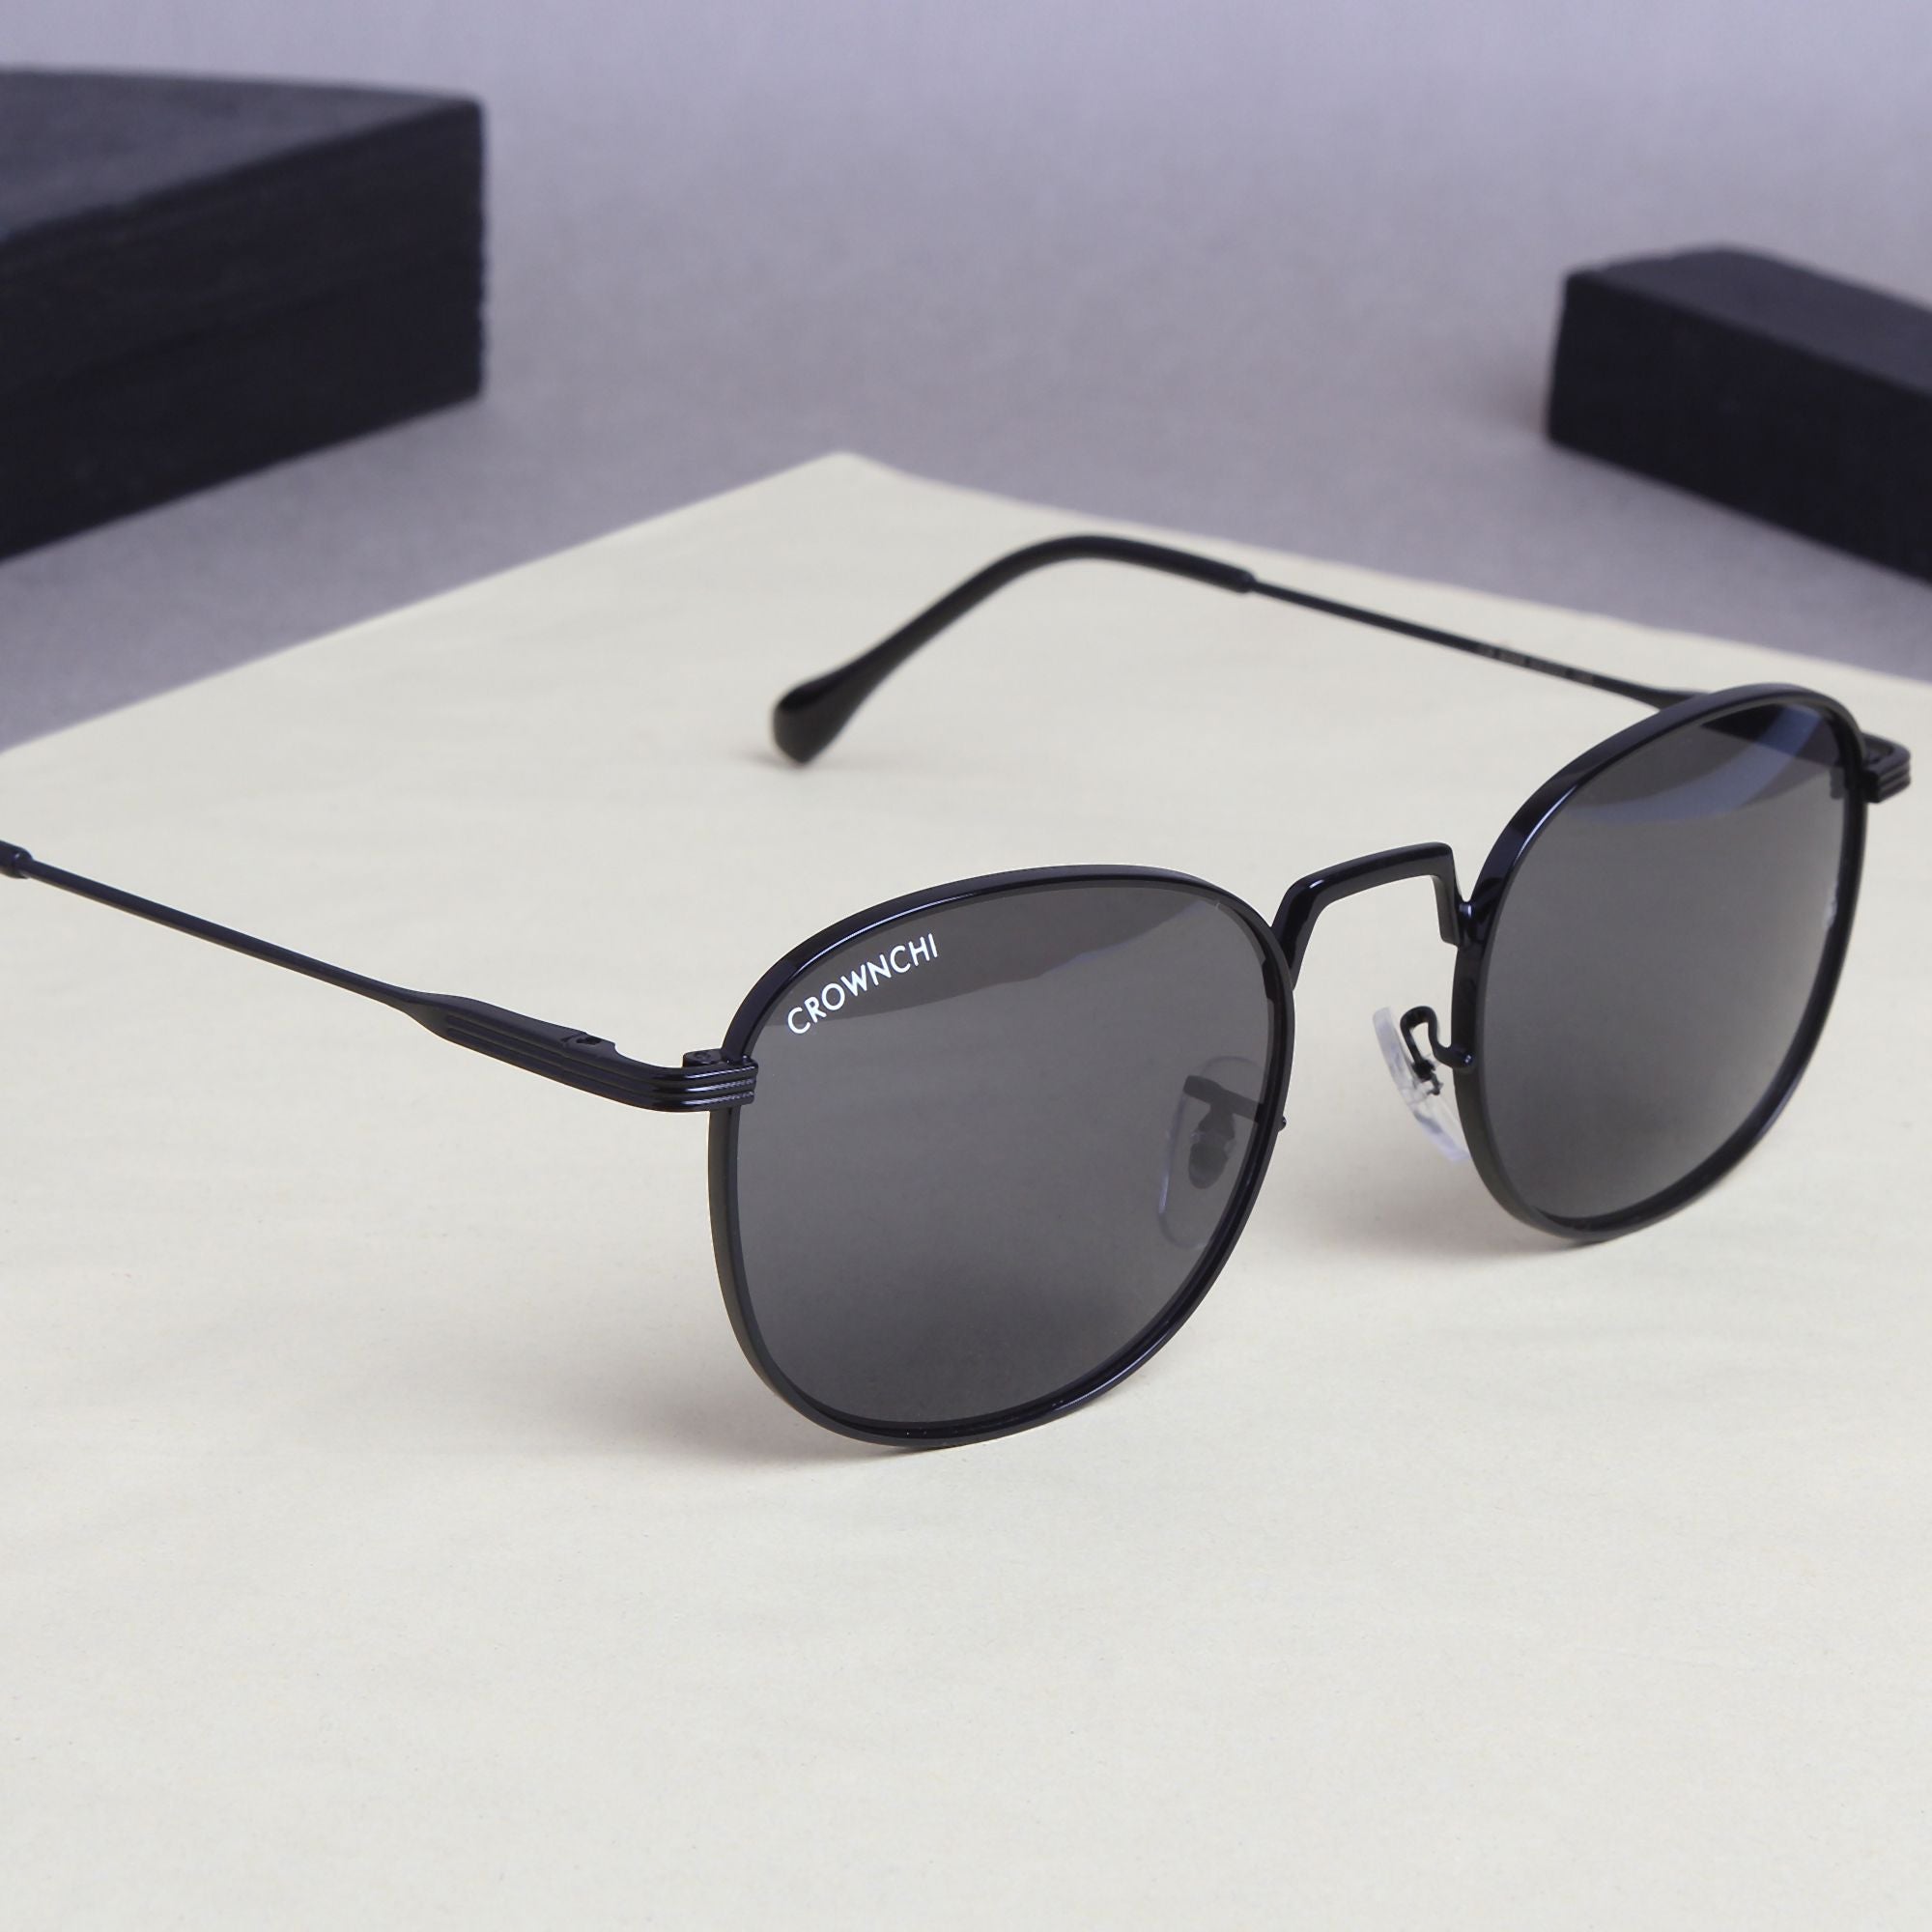 Crownchi Martin Black Round Edition Sunglasses